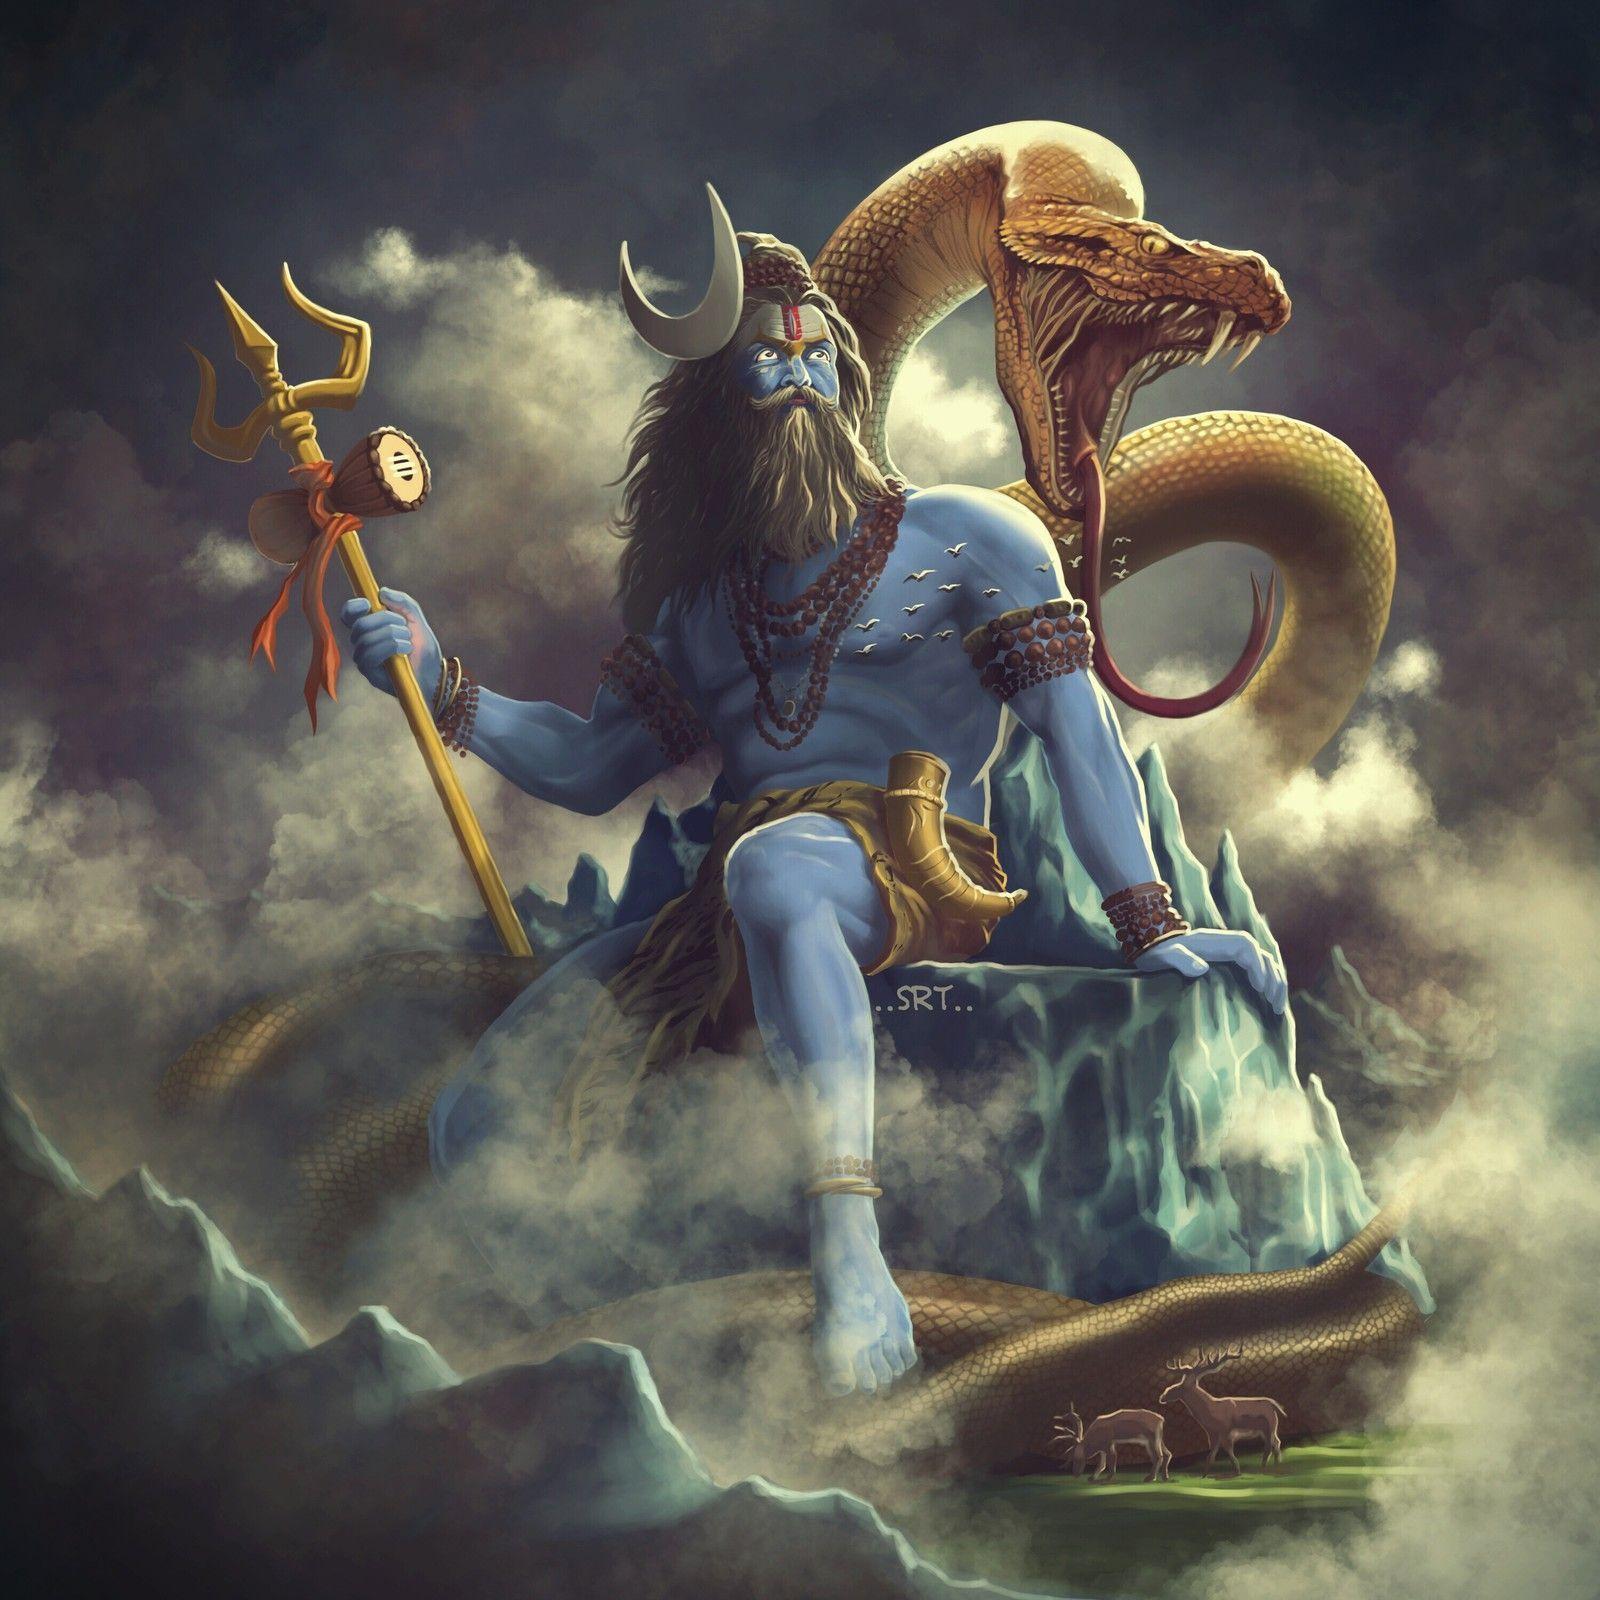 aghori shiva. Lord Shiva